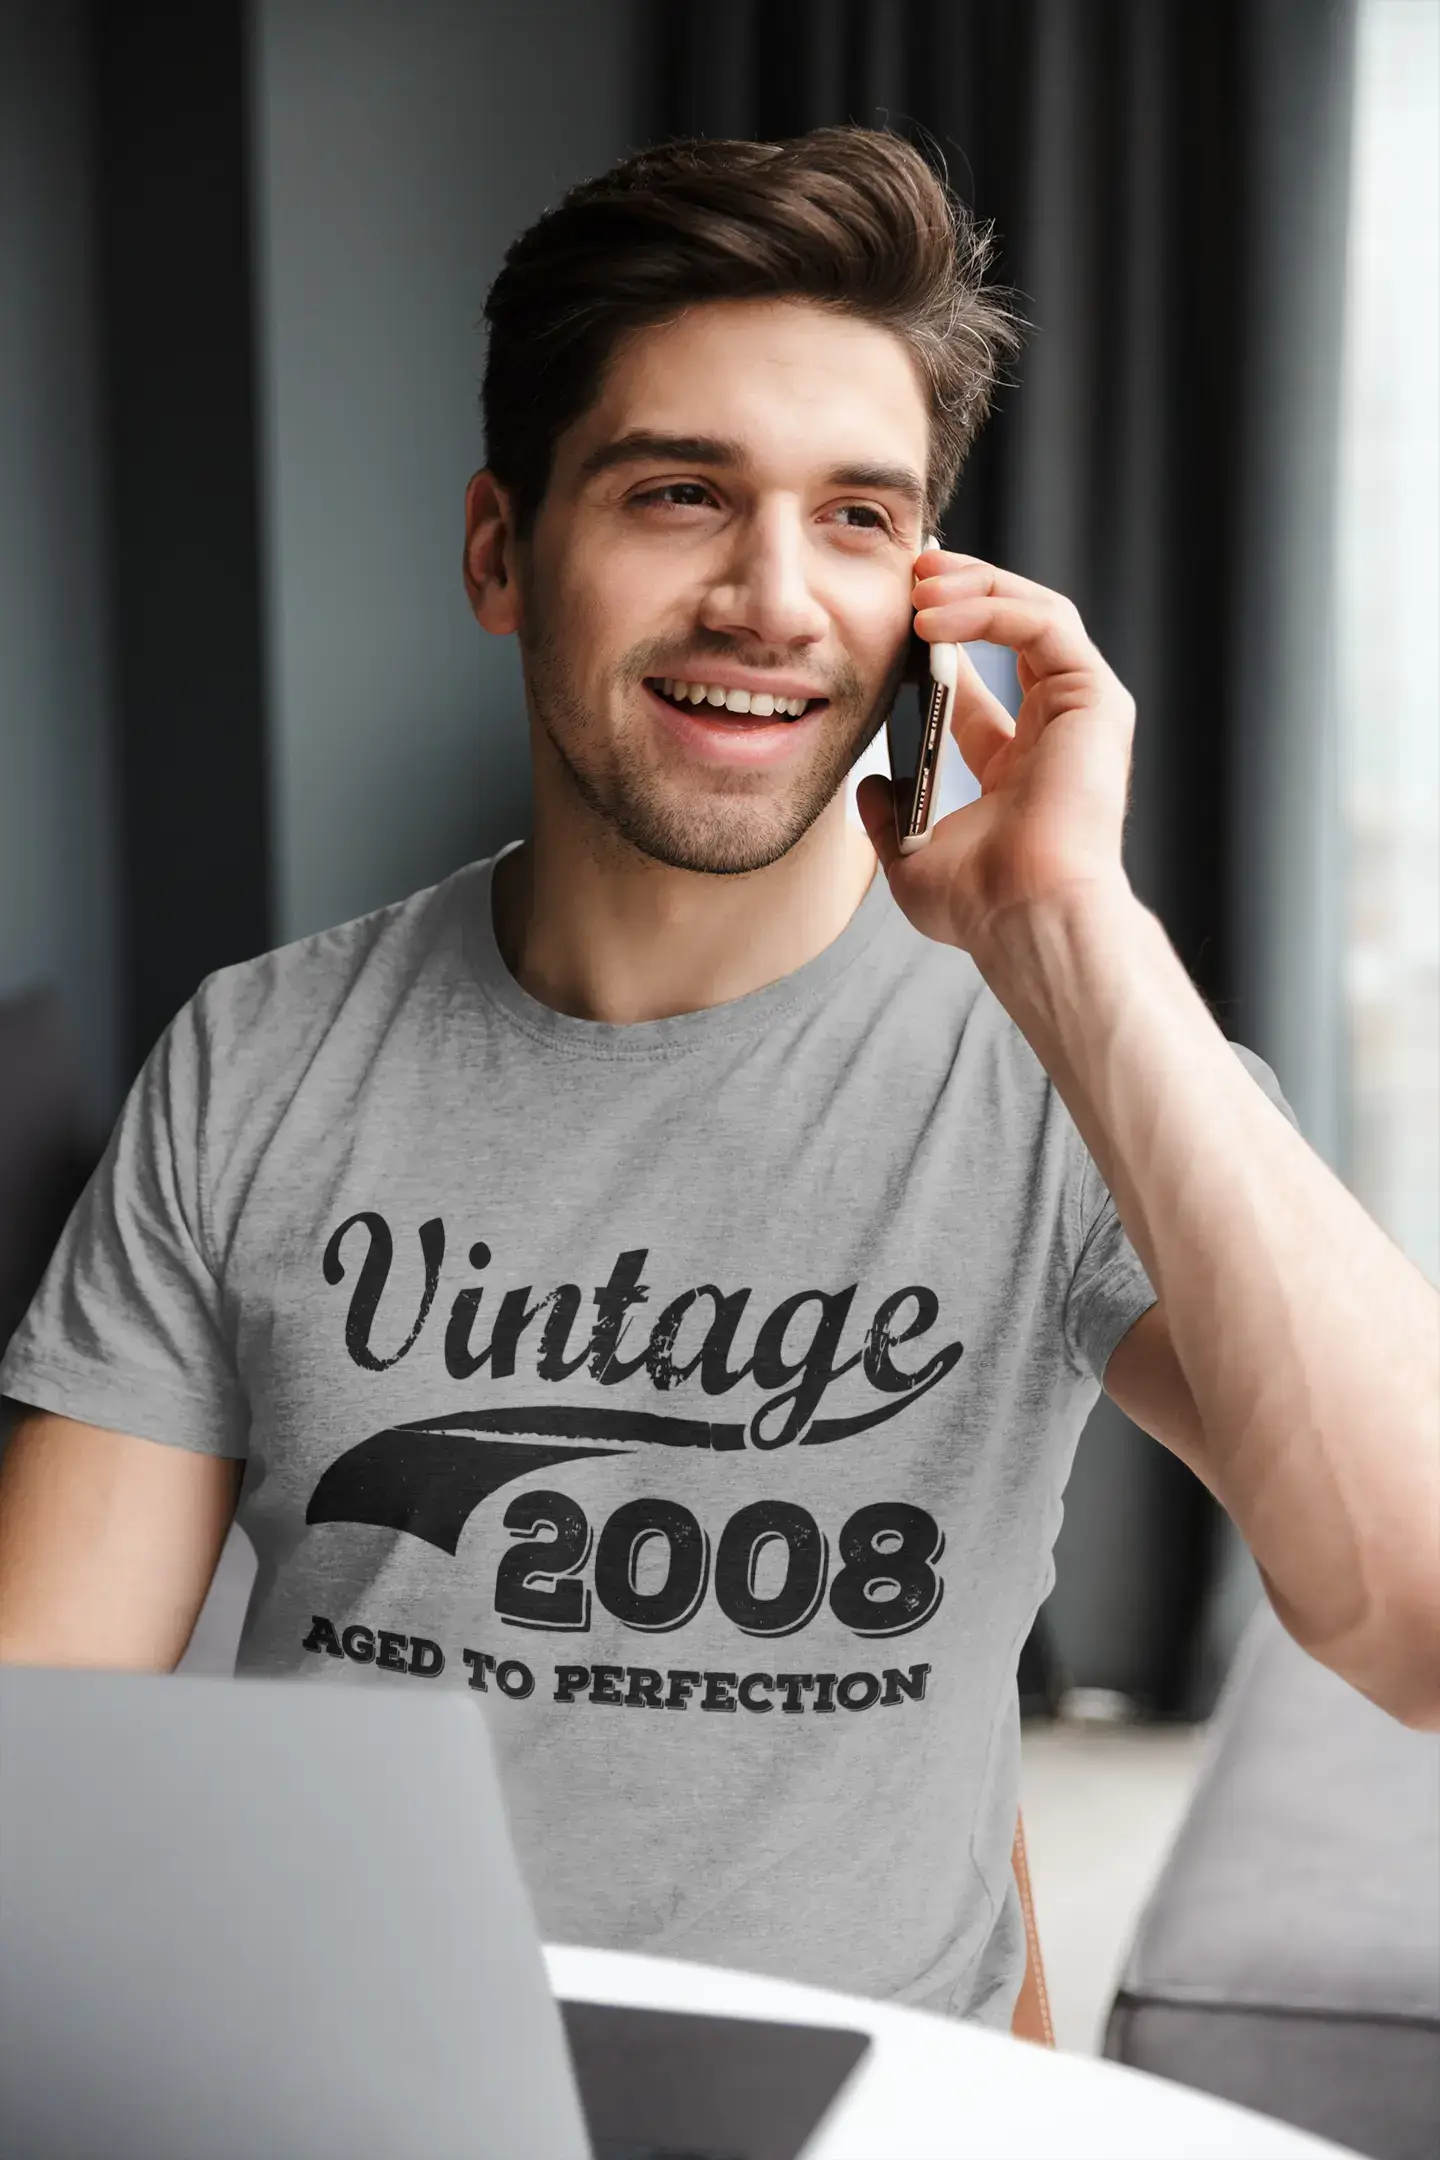 Vintage Aged to Perfection 2008, Grau, Herren-Kurzarm-Rundhals-T-Shirt, Geschenk-T-Shirt 00346